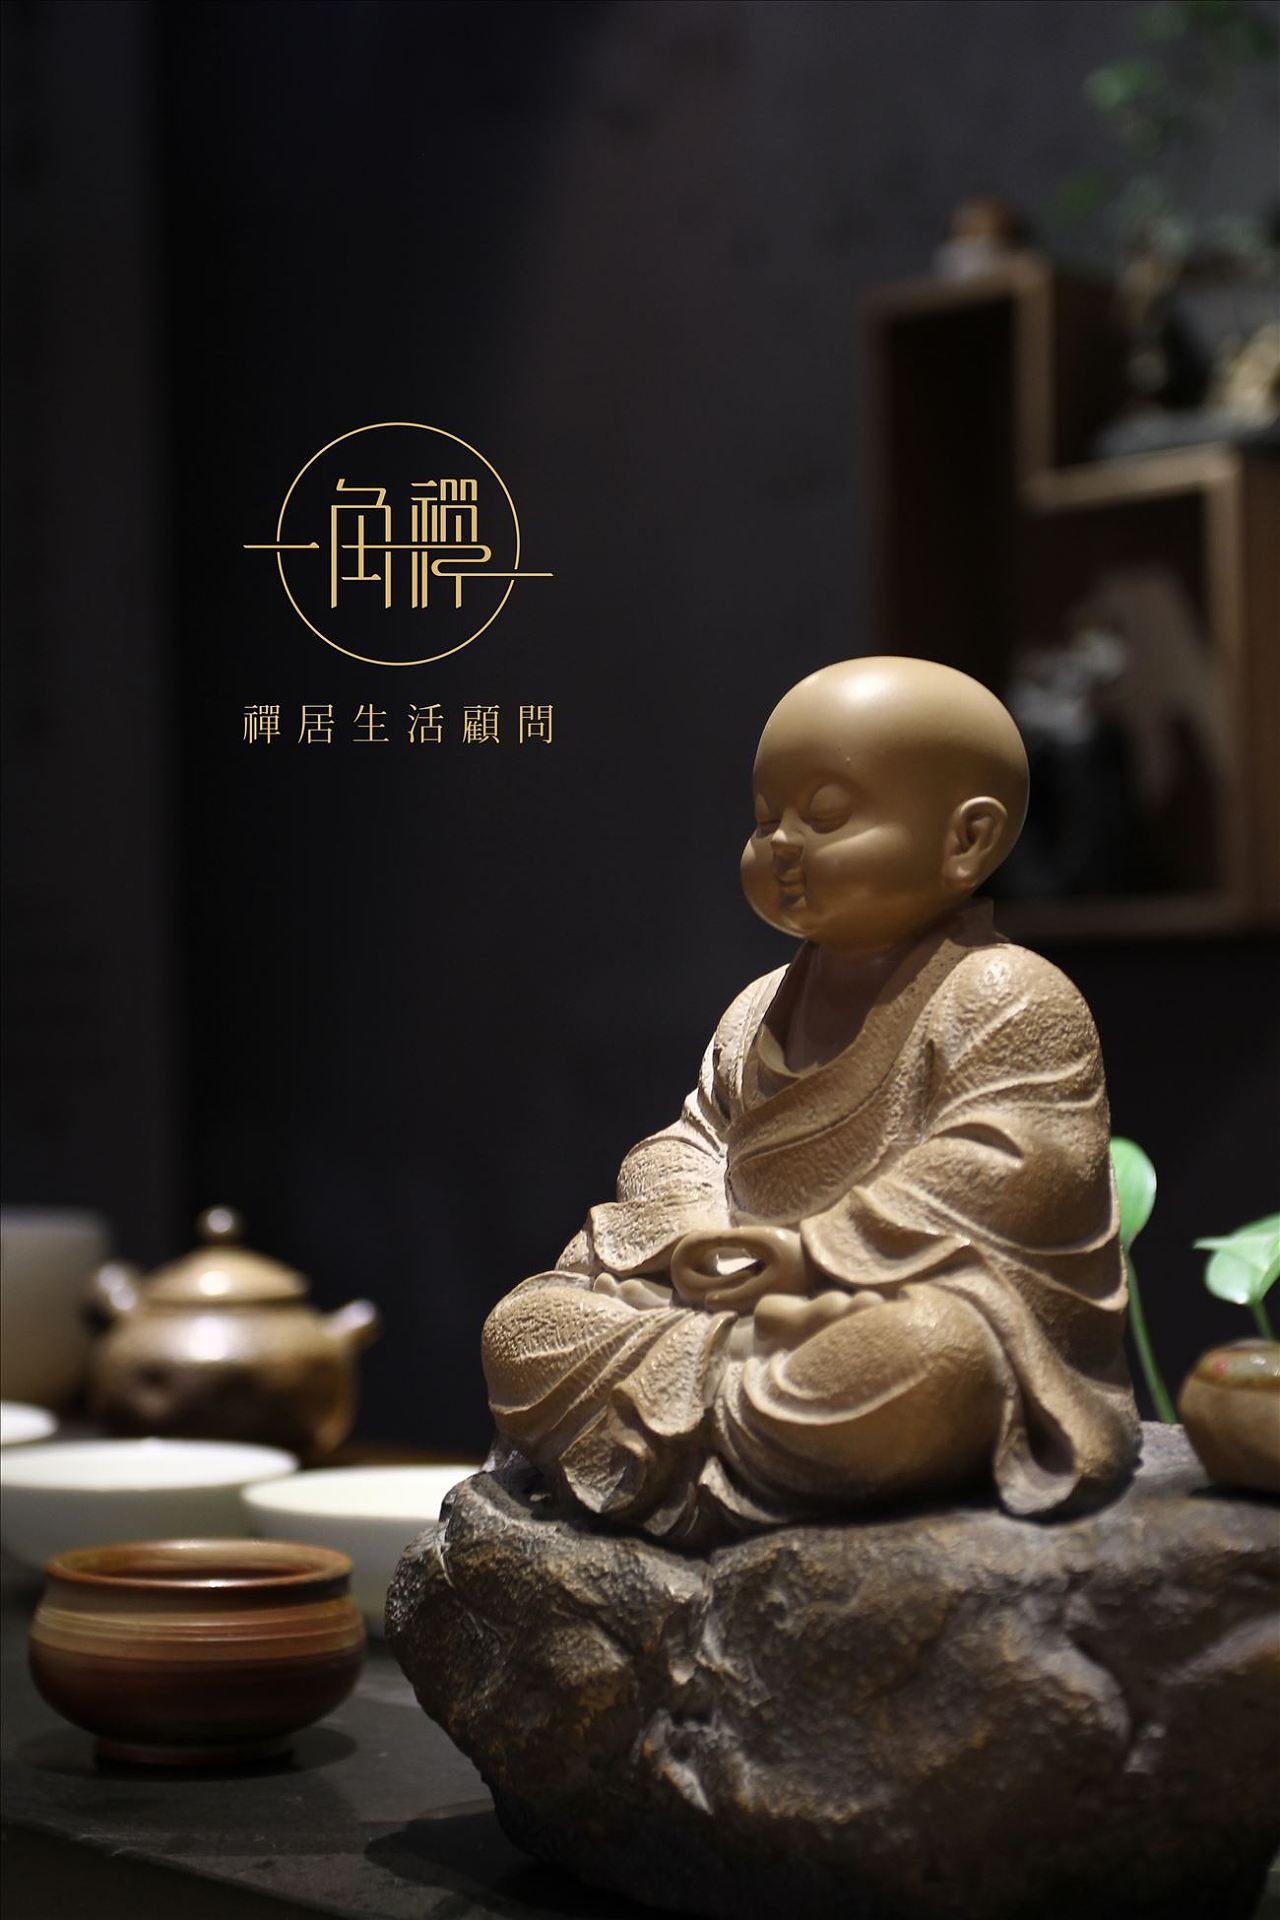 浓缩了中国禅文化精髓,独具宁静致远的意境.